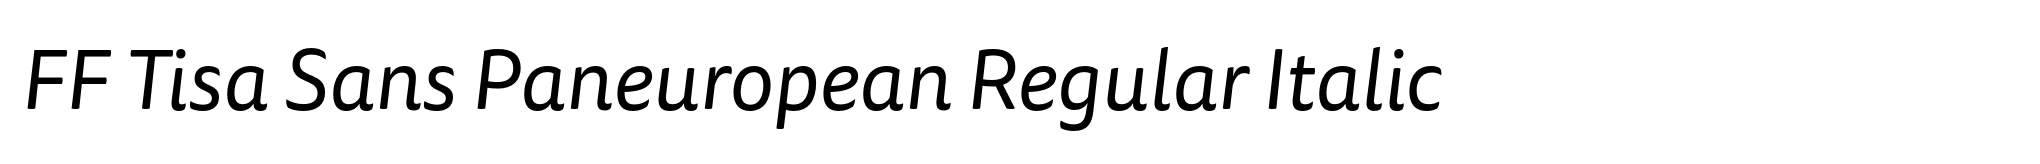 FF Tisa Sans Paneuropean Regular Italic image